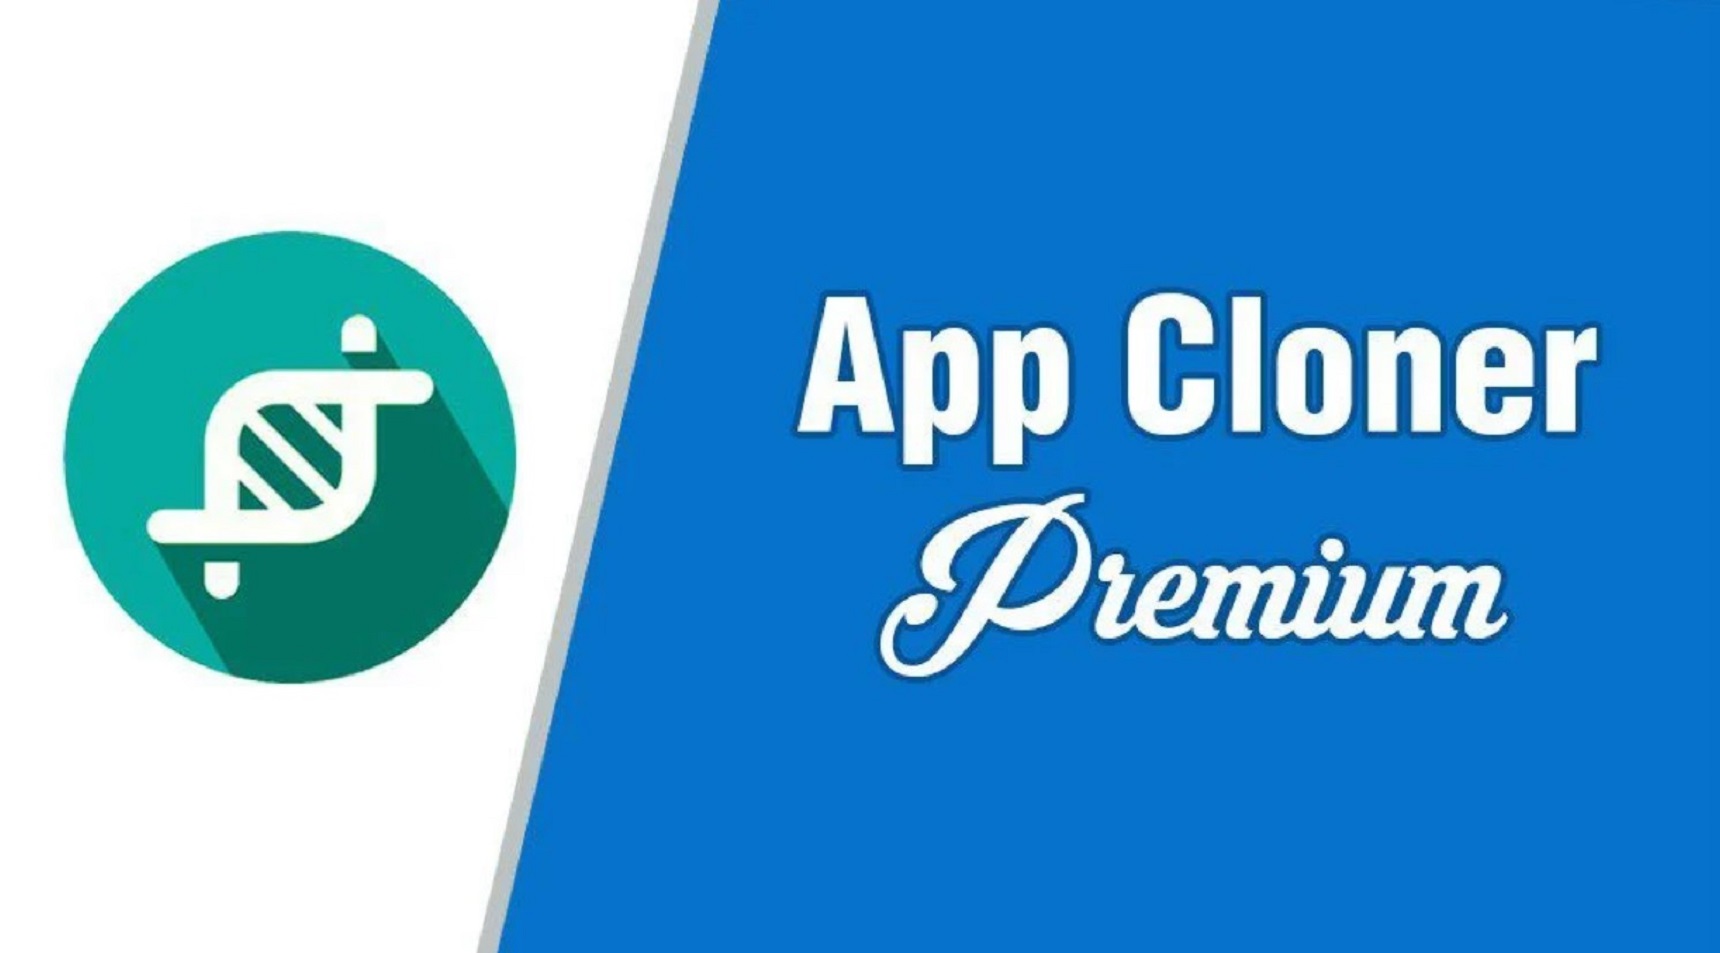 App Cloner Premium MOD APK 2.16.4 (Full Unlocked)